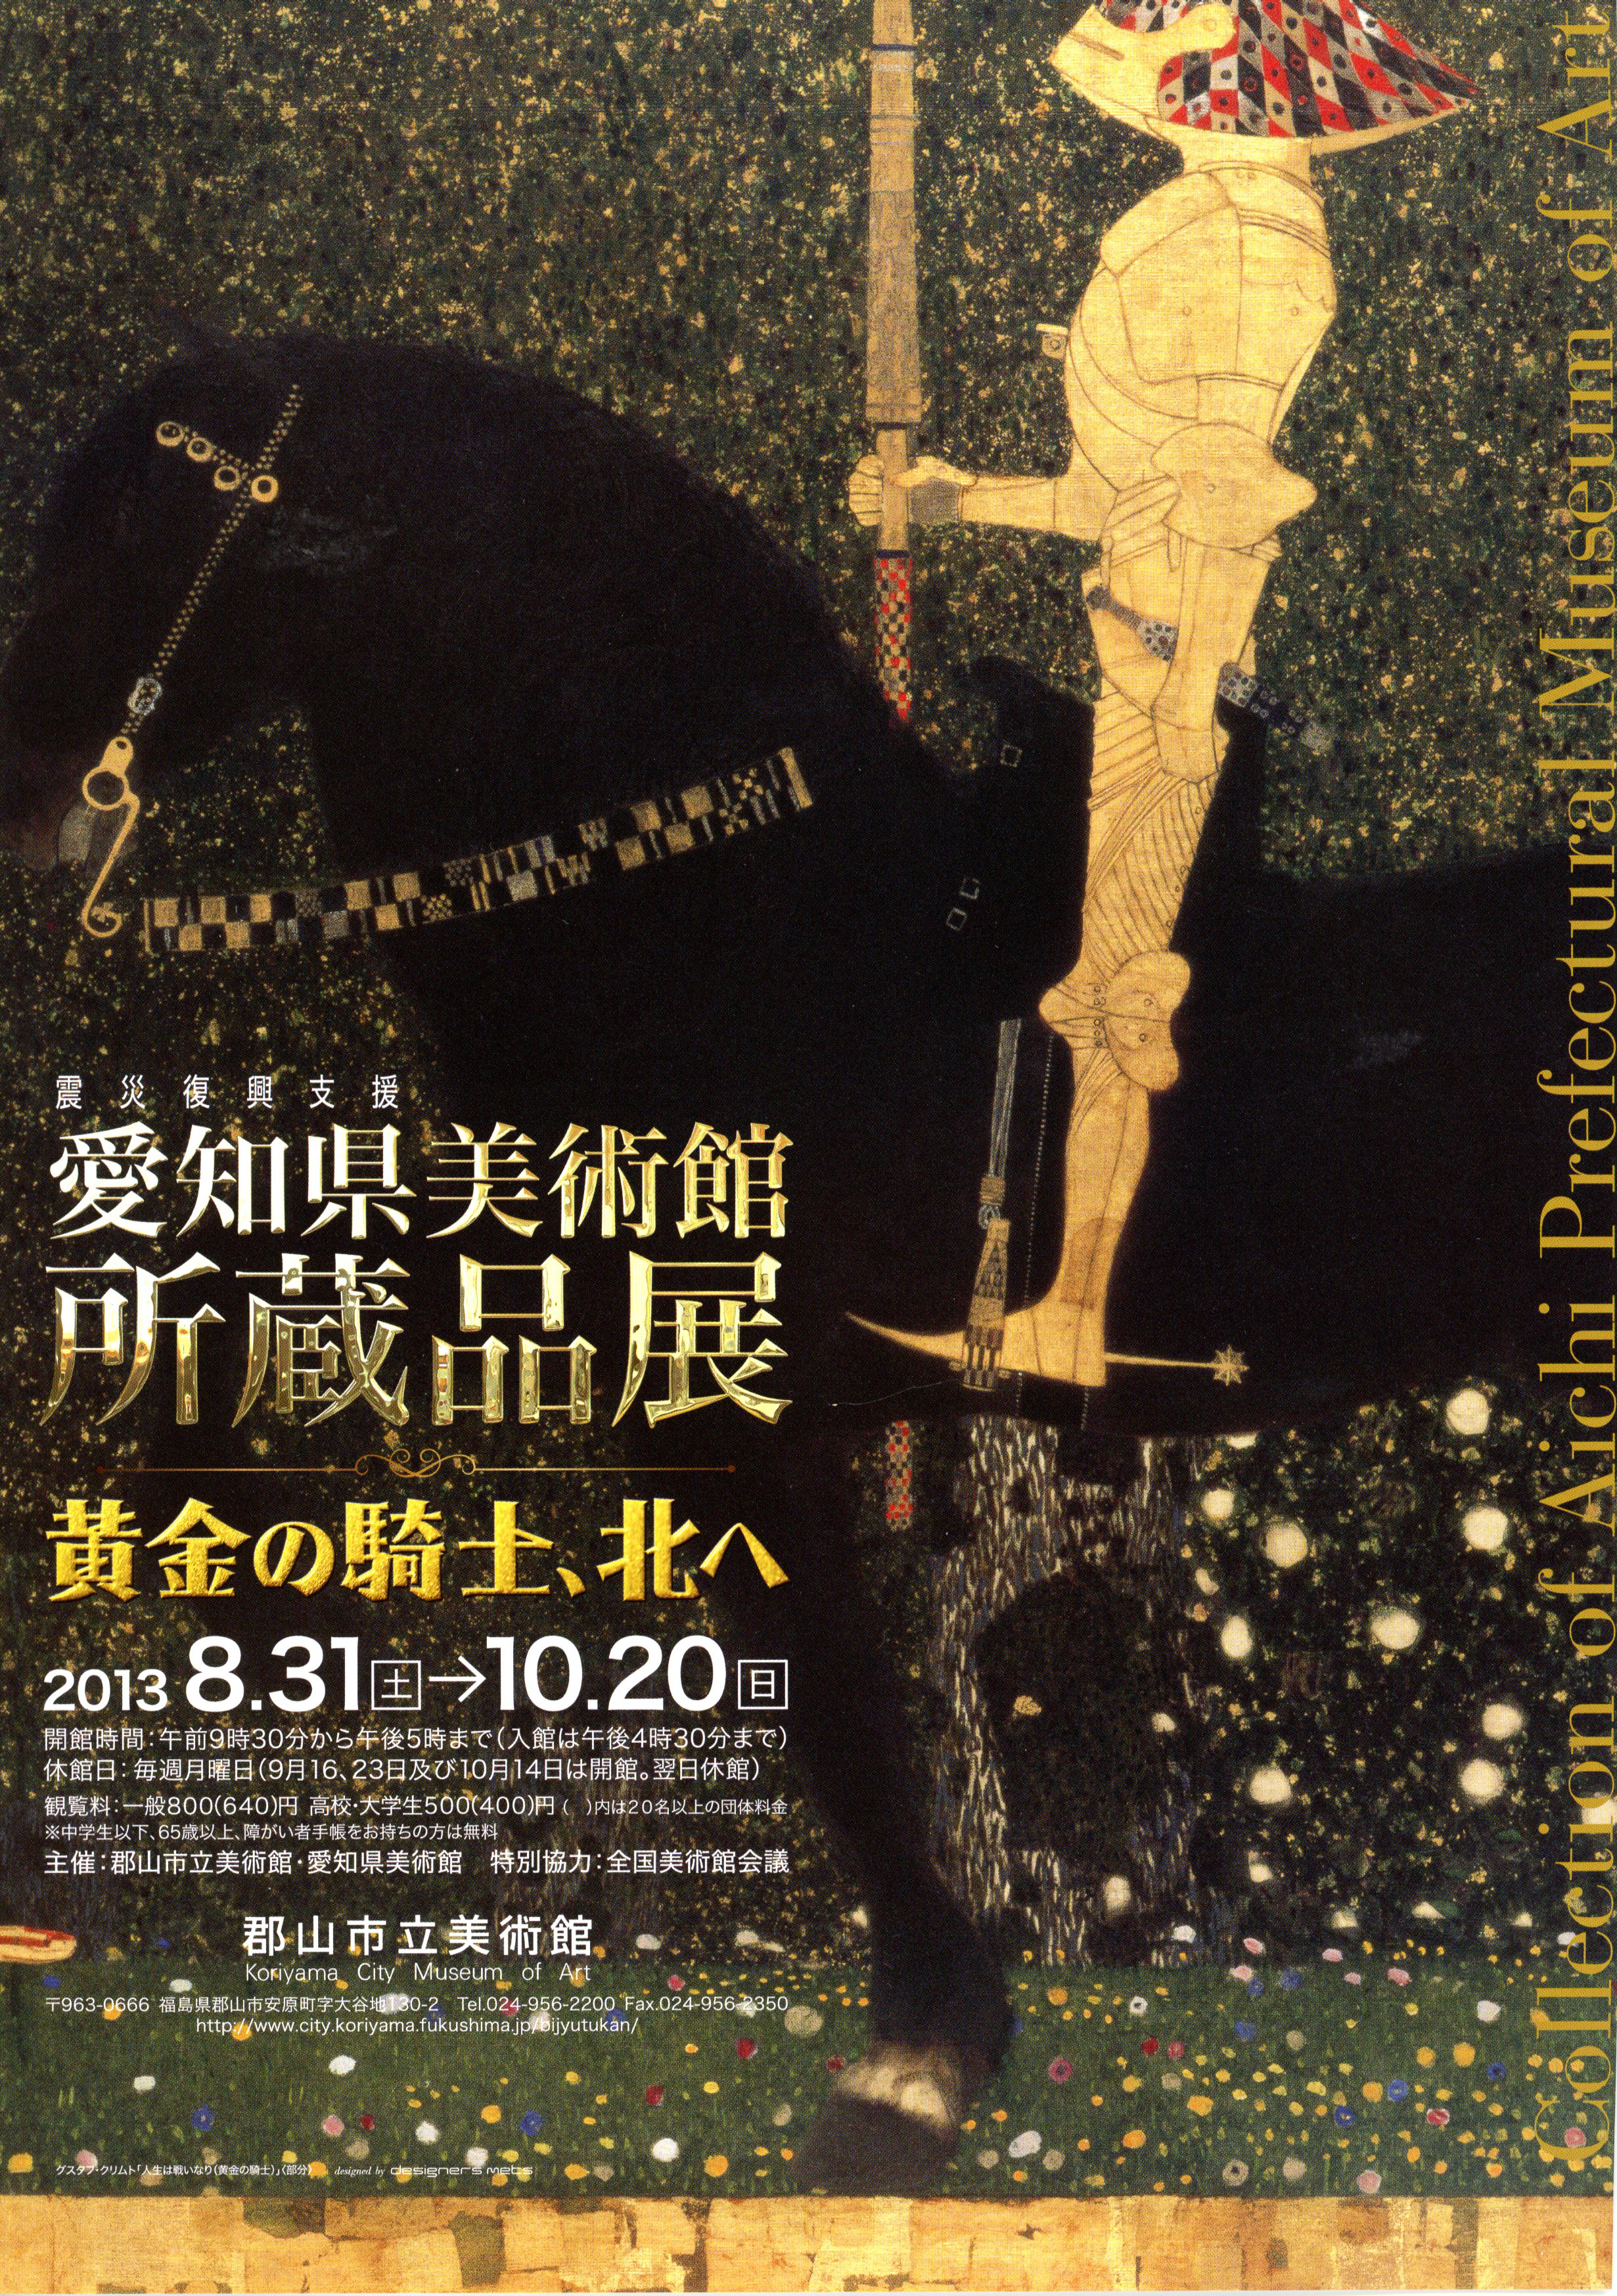 愛知県美術館所蔵品展のポスター